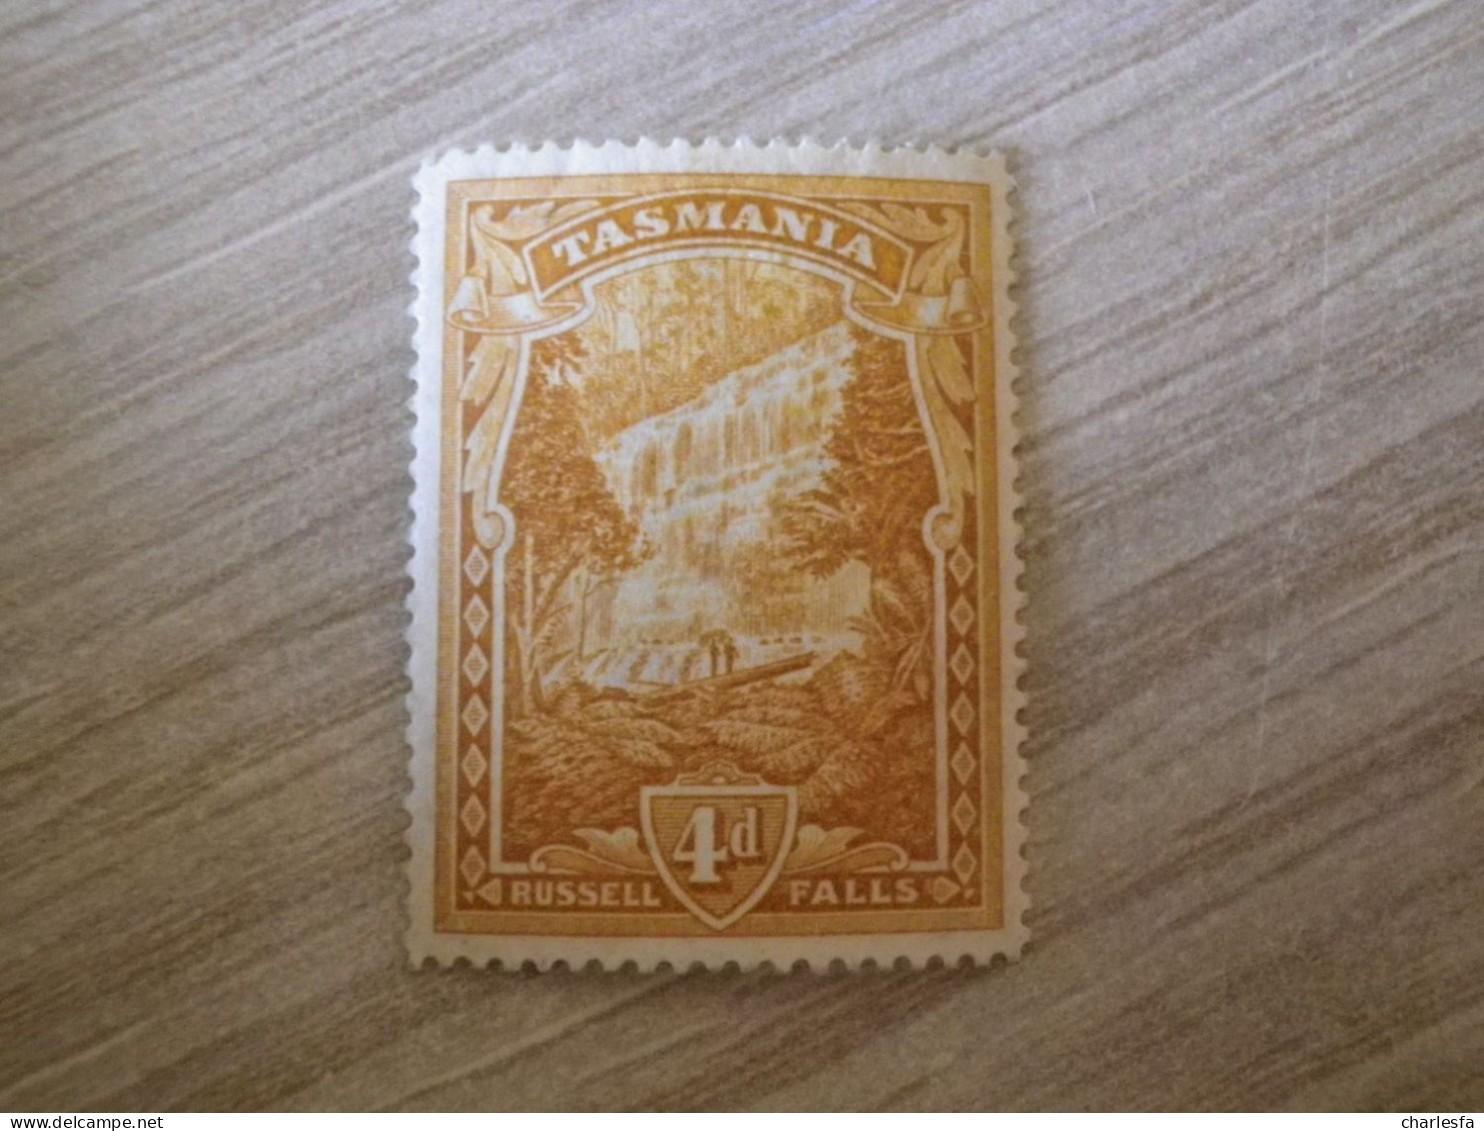 TASMANIE N°64 - Mint Stamps